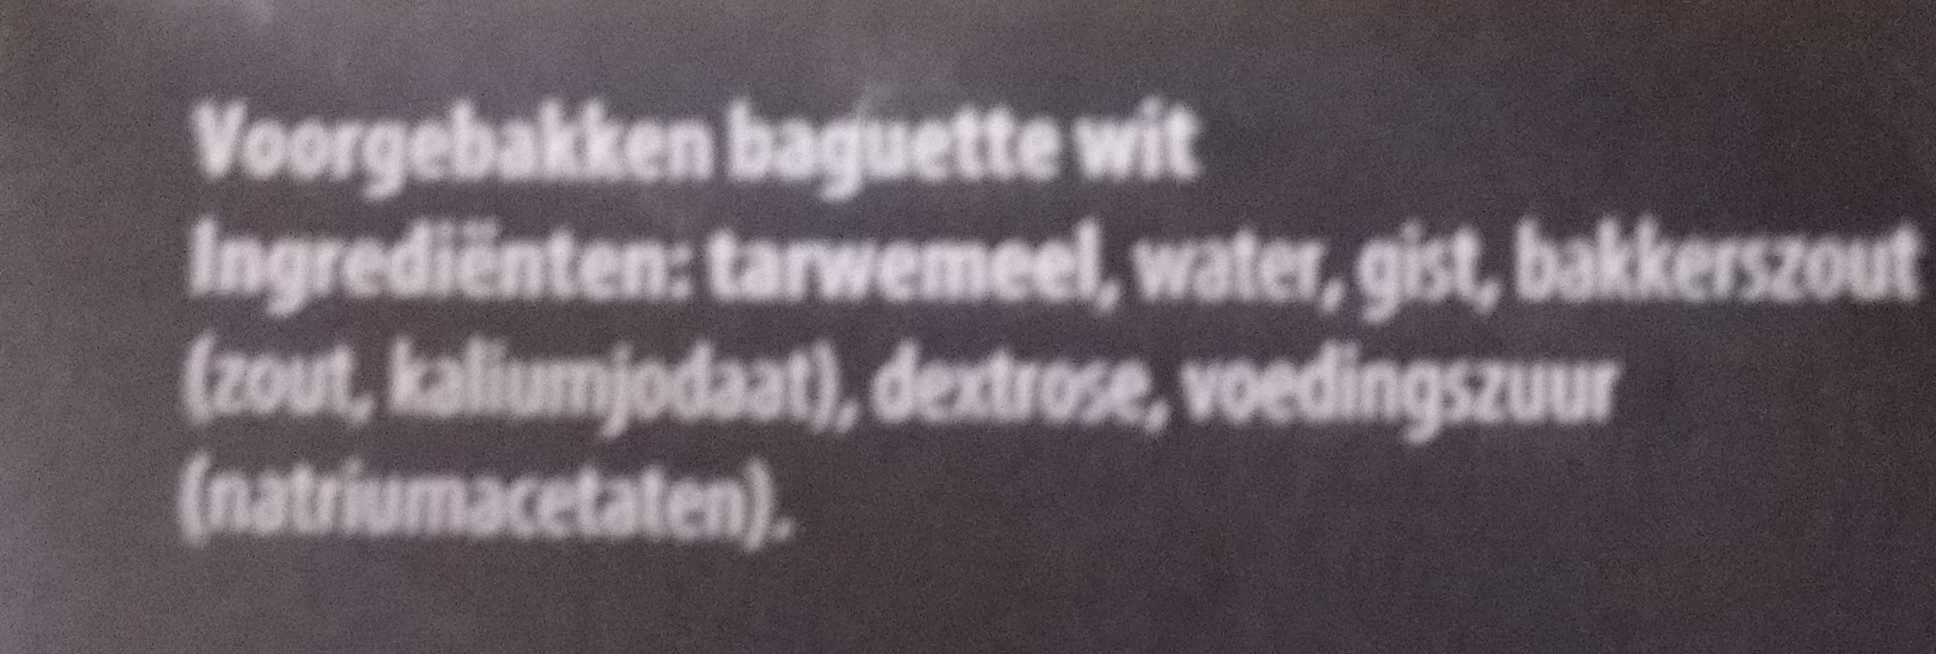 Baguettes Wit - Ingrediënten